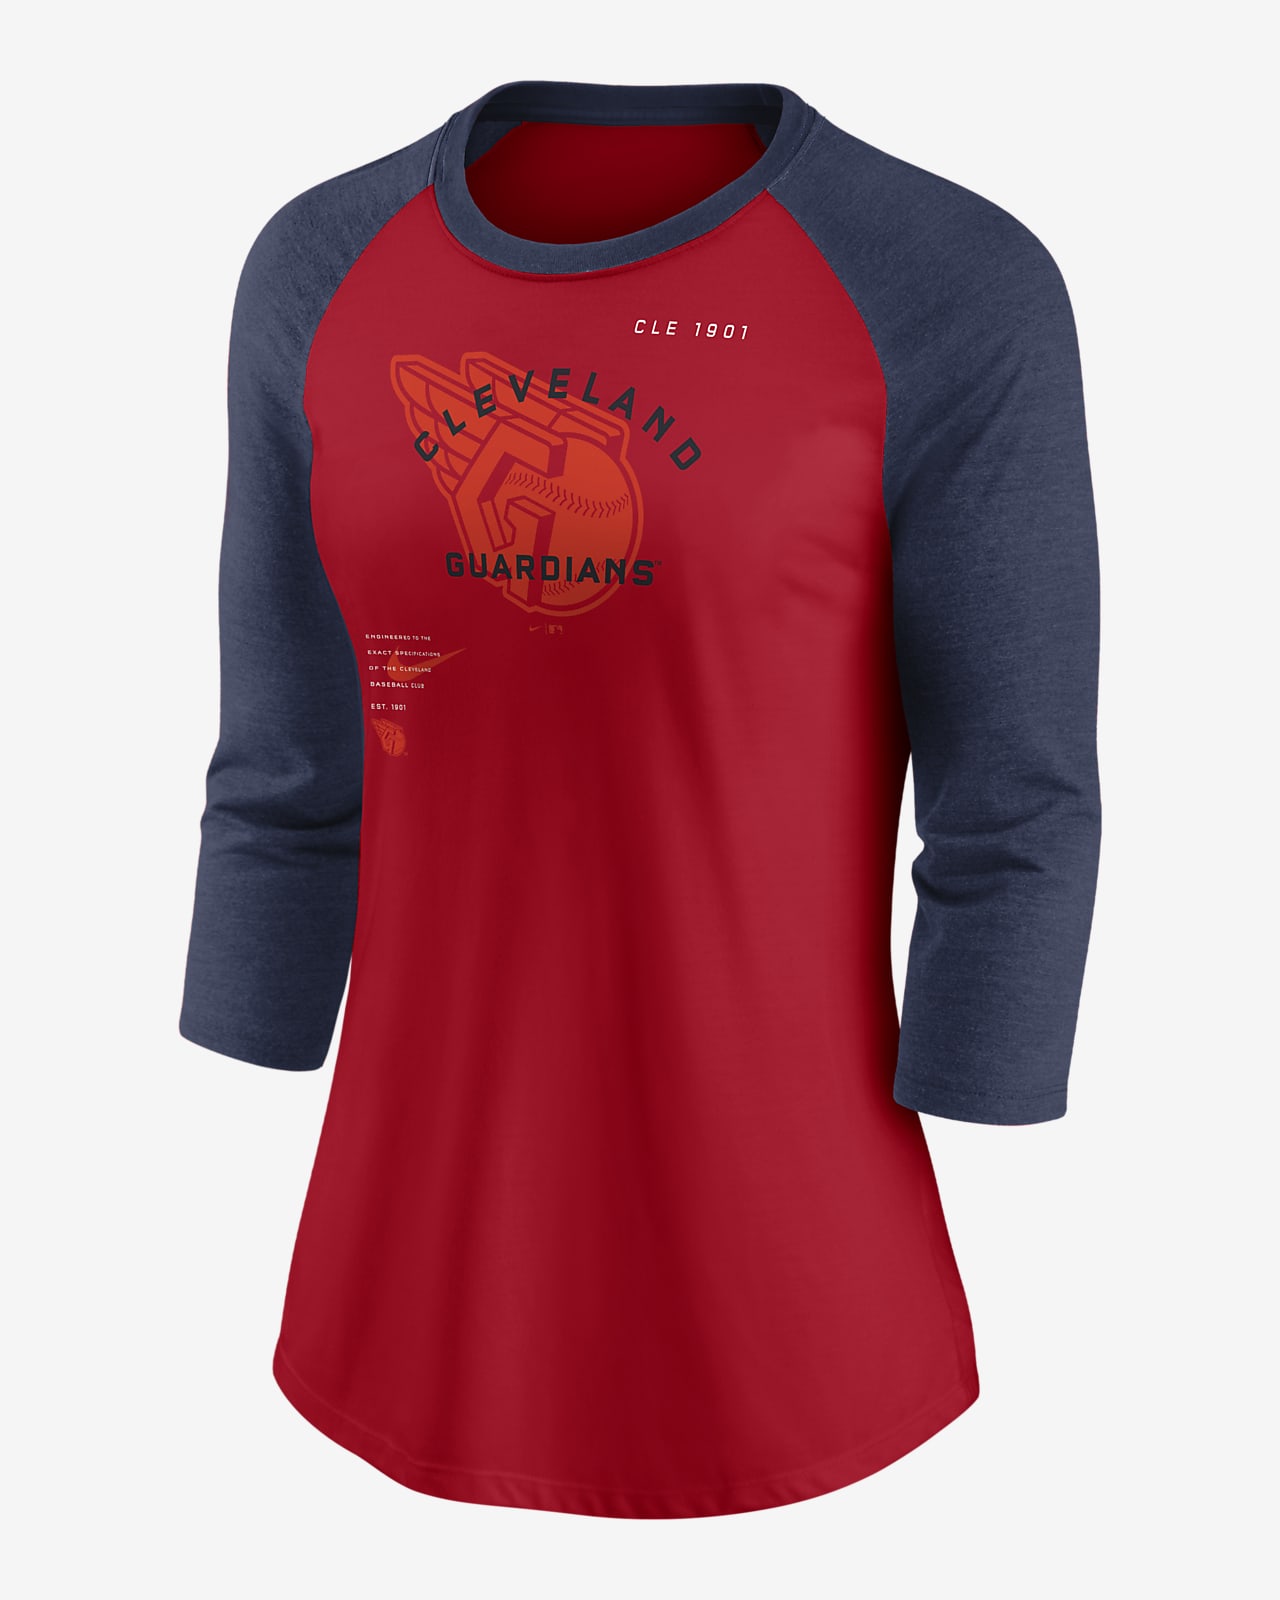 Cleveland Guardians Baseball Cotton Shirt Sport Gift for Men Women